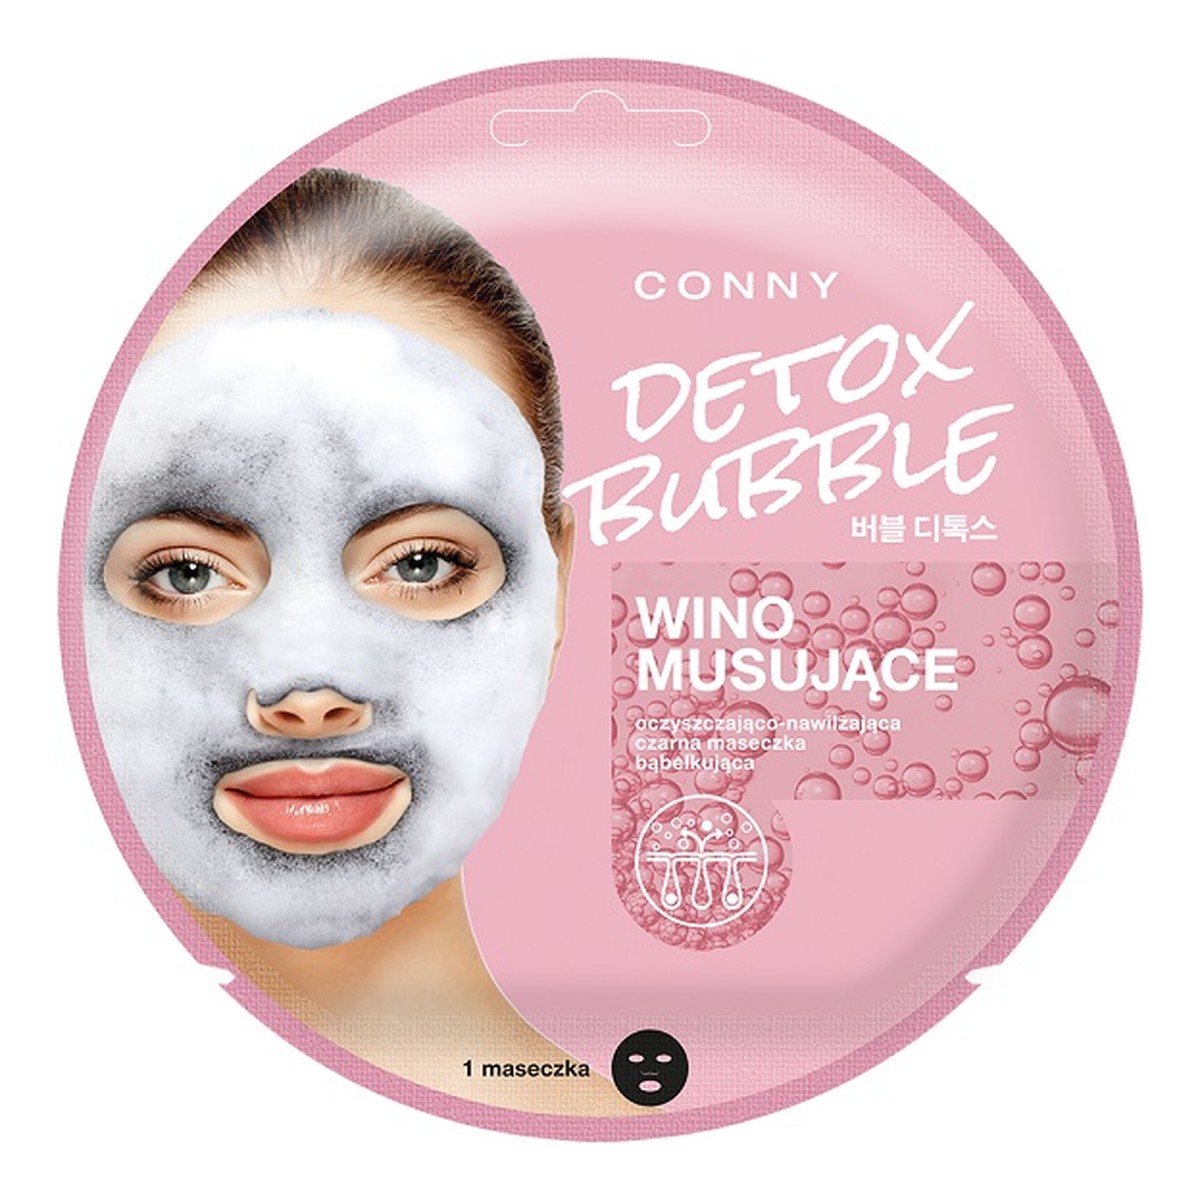 Detox Bubble Mask oczyszczająco-nawilżająca czarna maseczka bąbelkująca do twarzy Wino Musujące 1szt